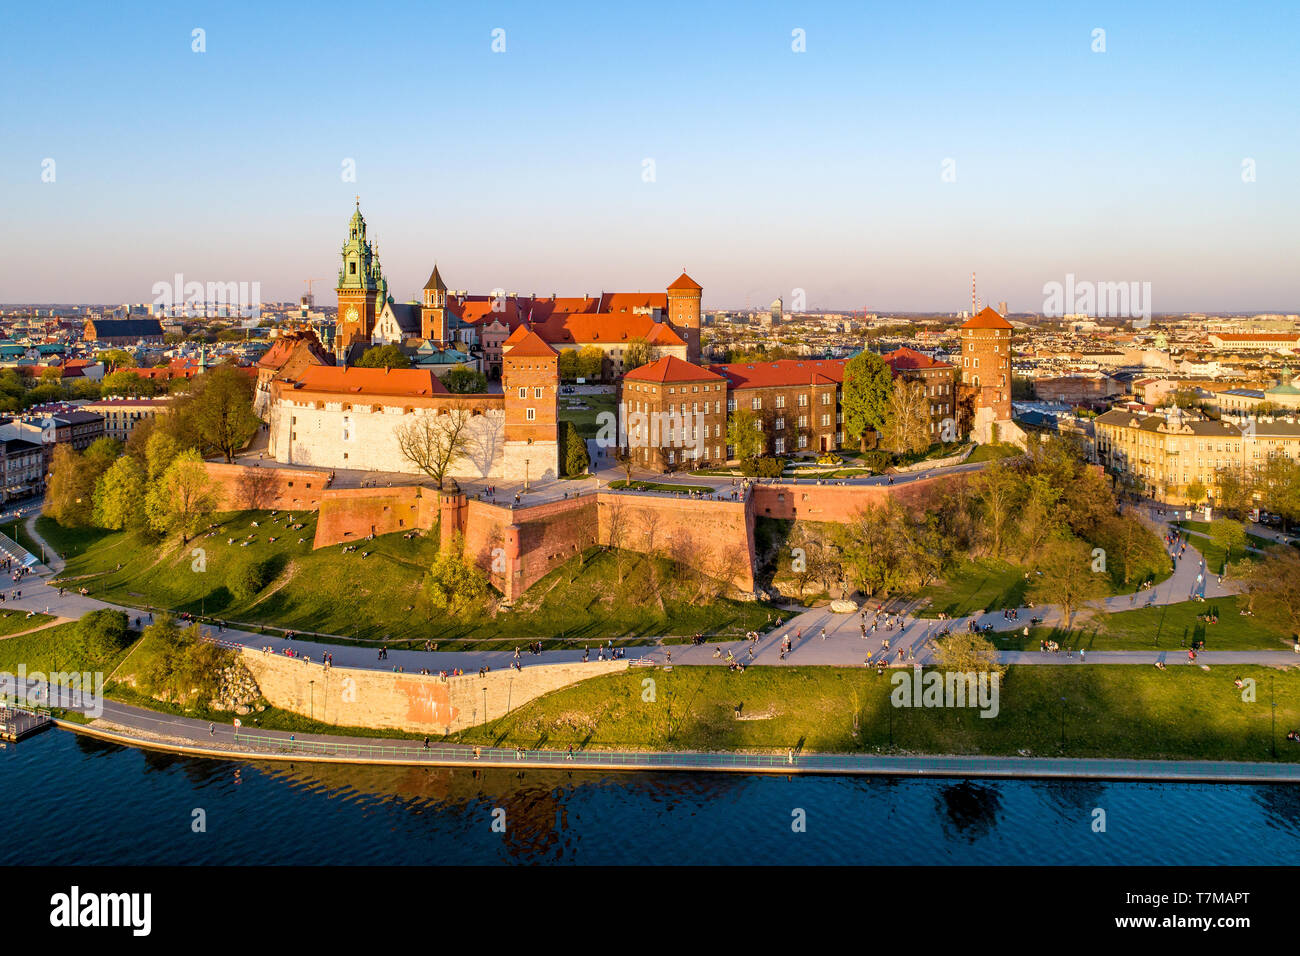 Historischen Königlichen Schloss und Kathedrale auf dem Wawel in Krakau, Polen, mit Park und die Weichsel. Luftbild bei Sonnenuntergang Stockfoto